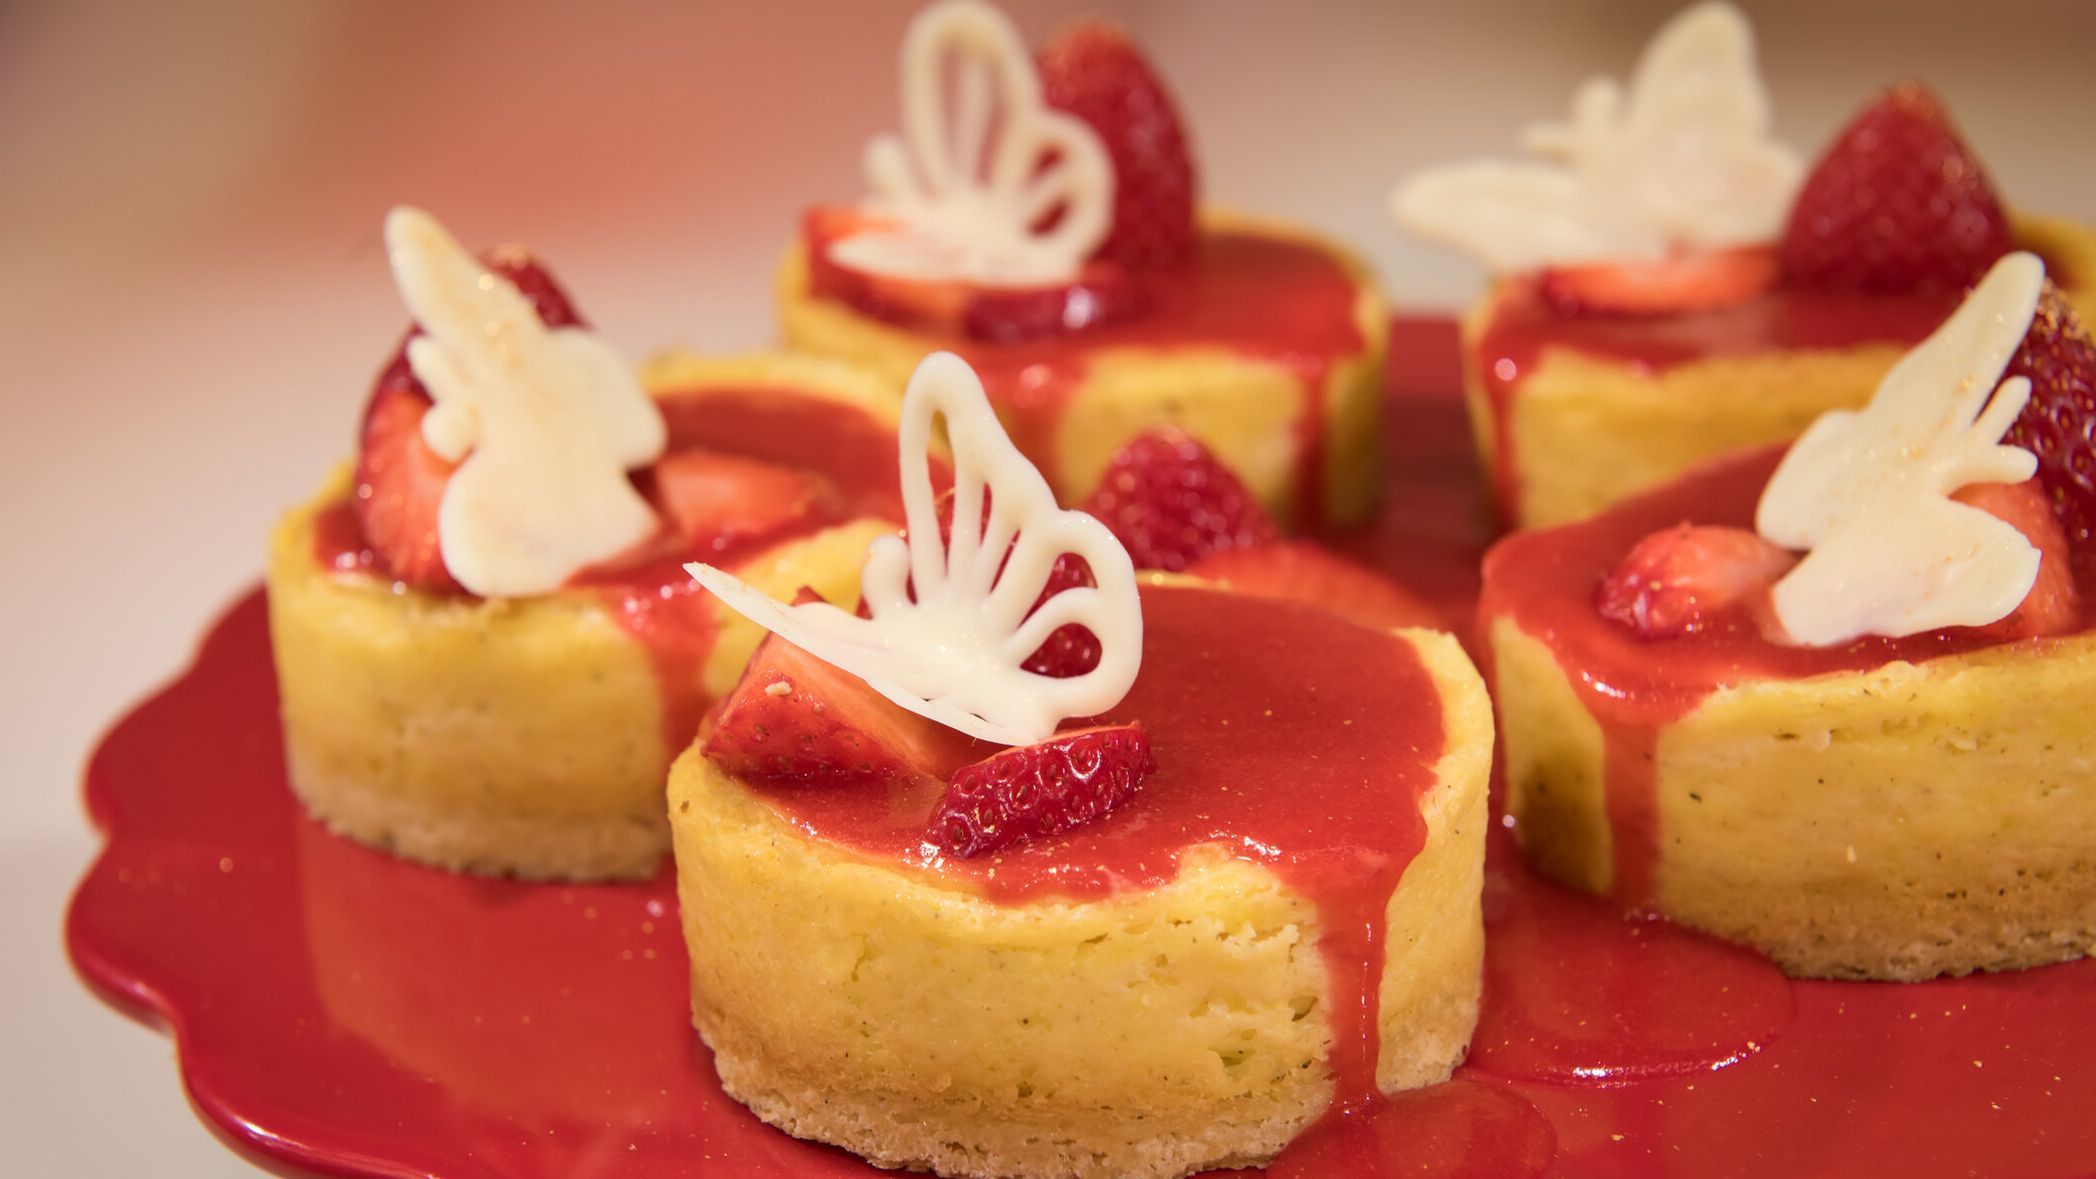 Cheesecake-Törtchen mit Erdbeeren